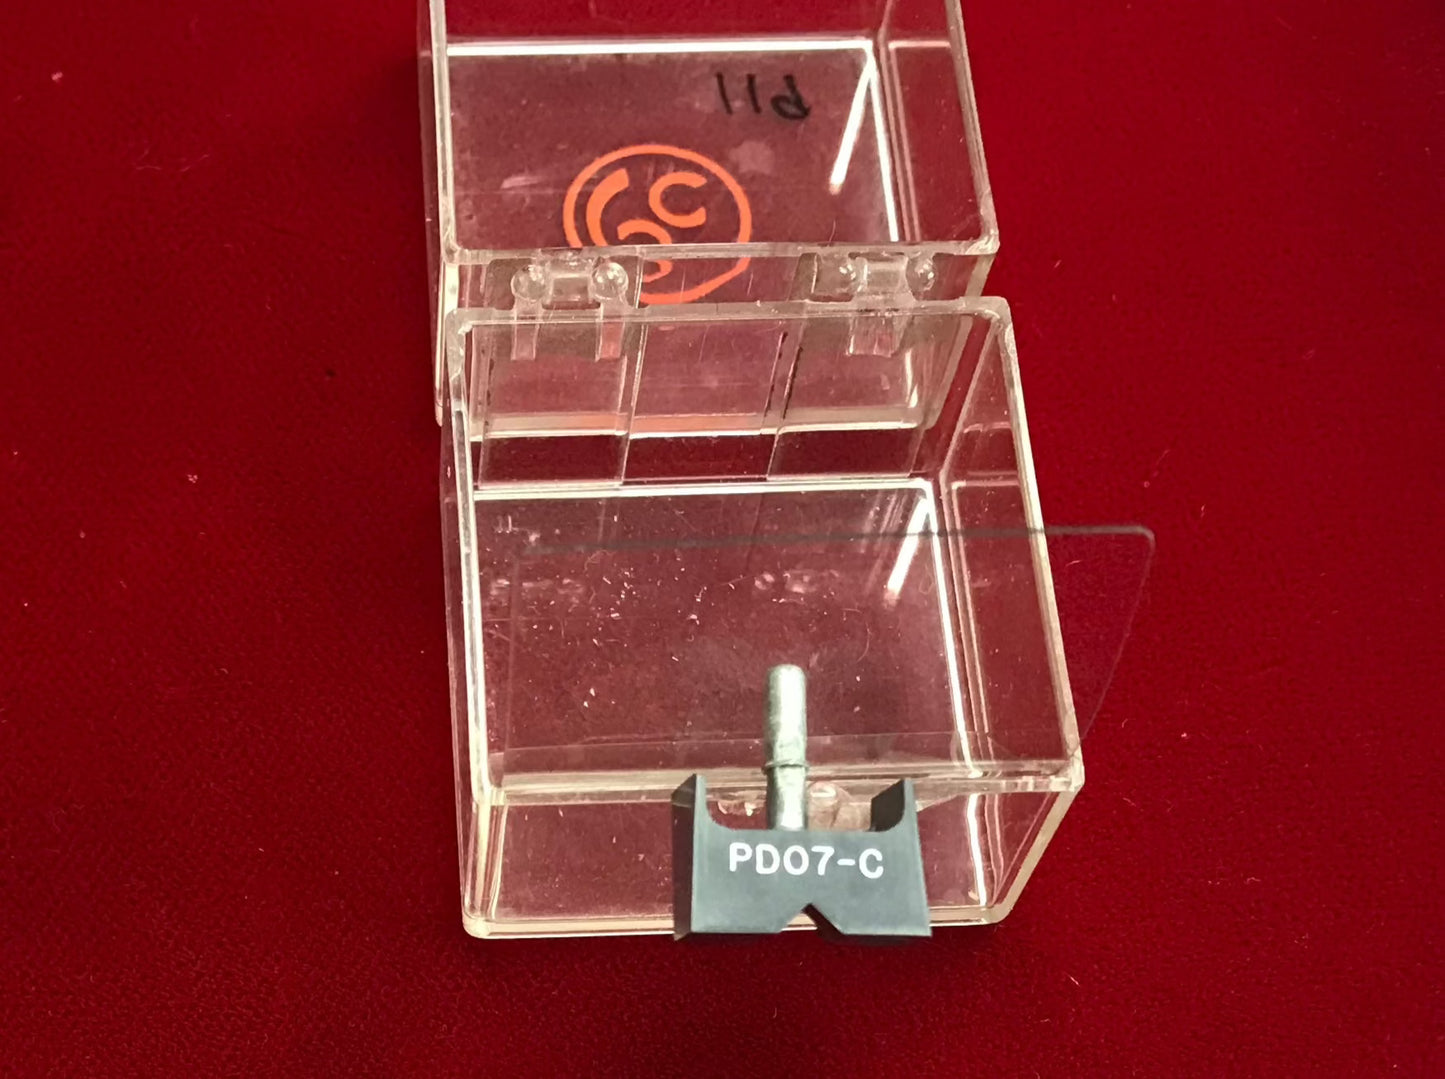 Pickering D1527 PD07-C Stylus